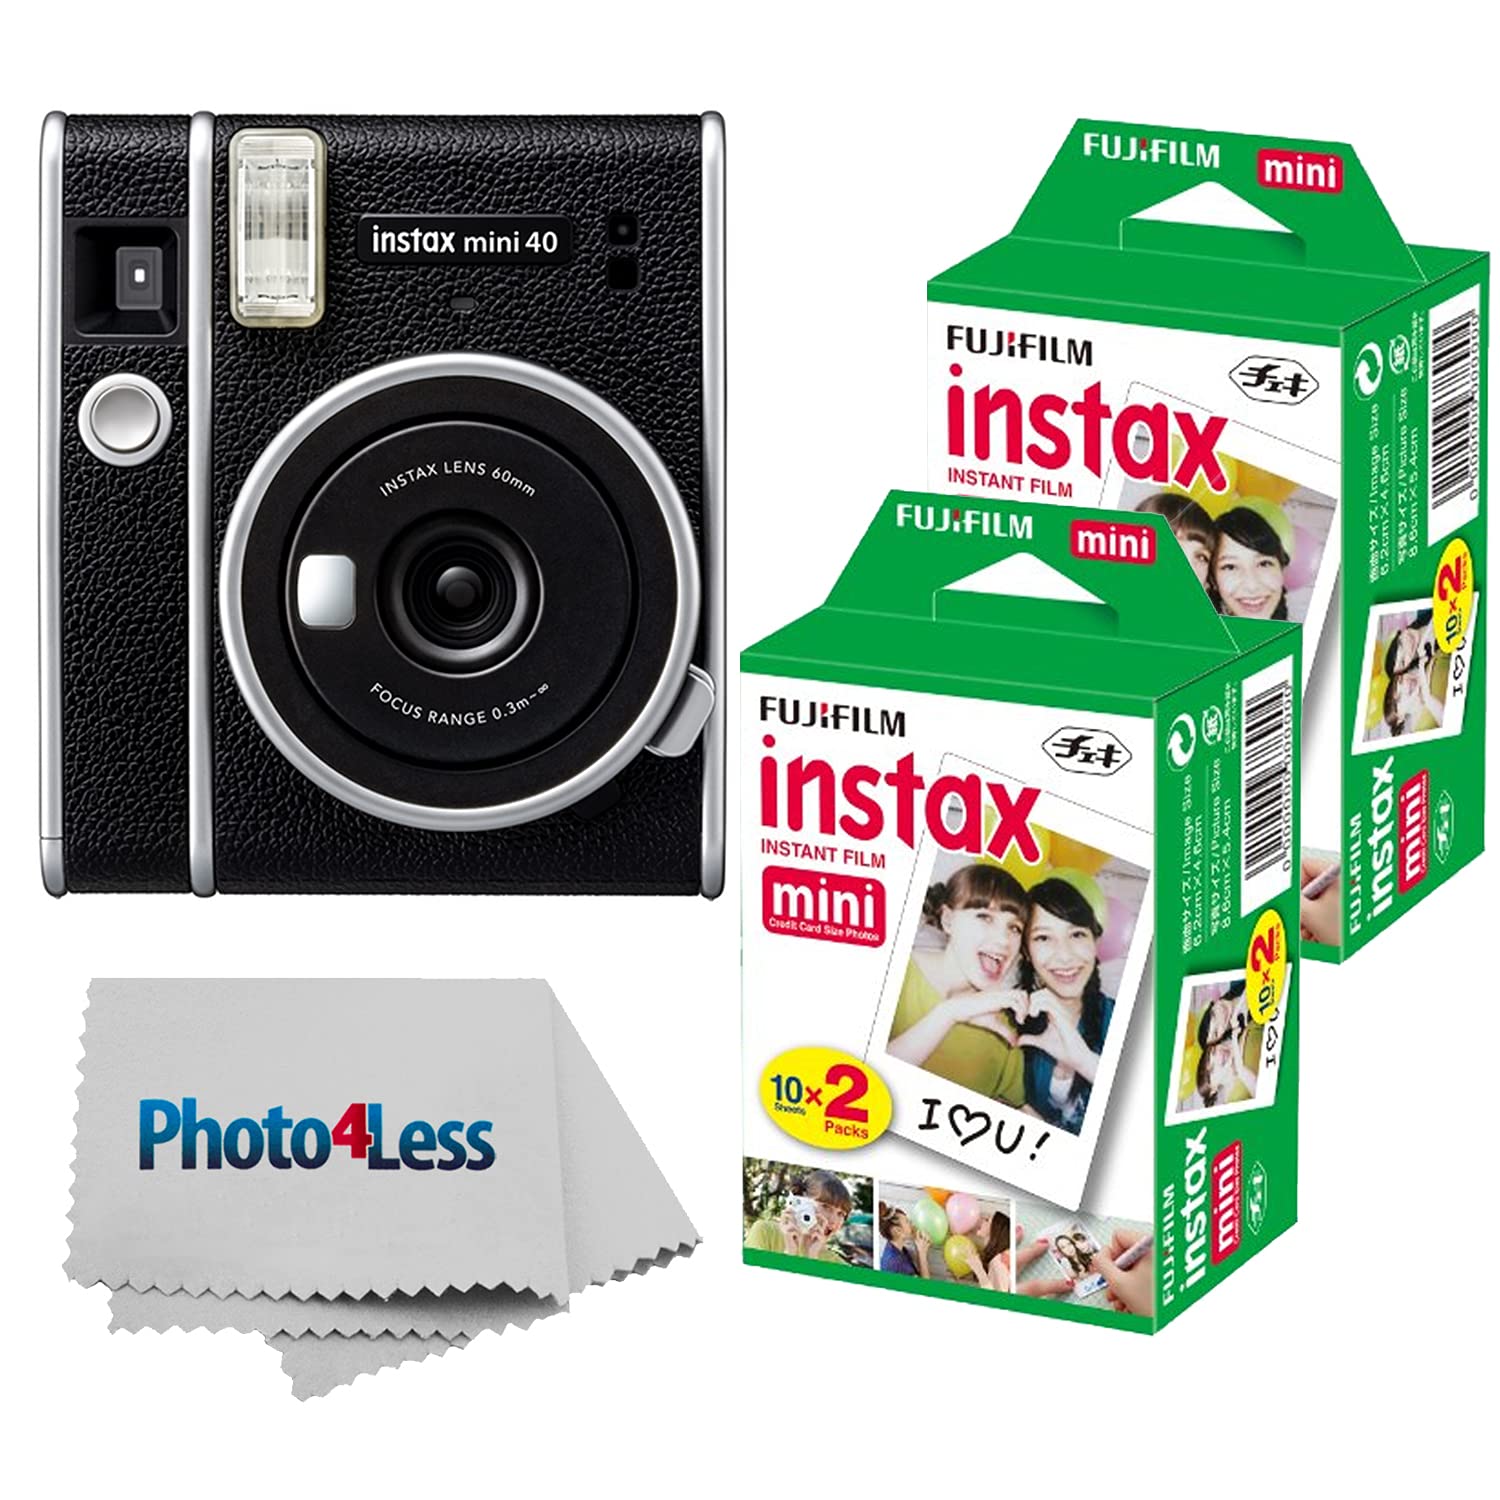  Fujifilm Instax Mini 40 インスタント カメラ ブラック+ Instax Mini ツインパック インスタント フィルム 2 パック (合計 40 枚) - インスタント カメラのお得...